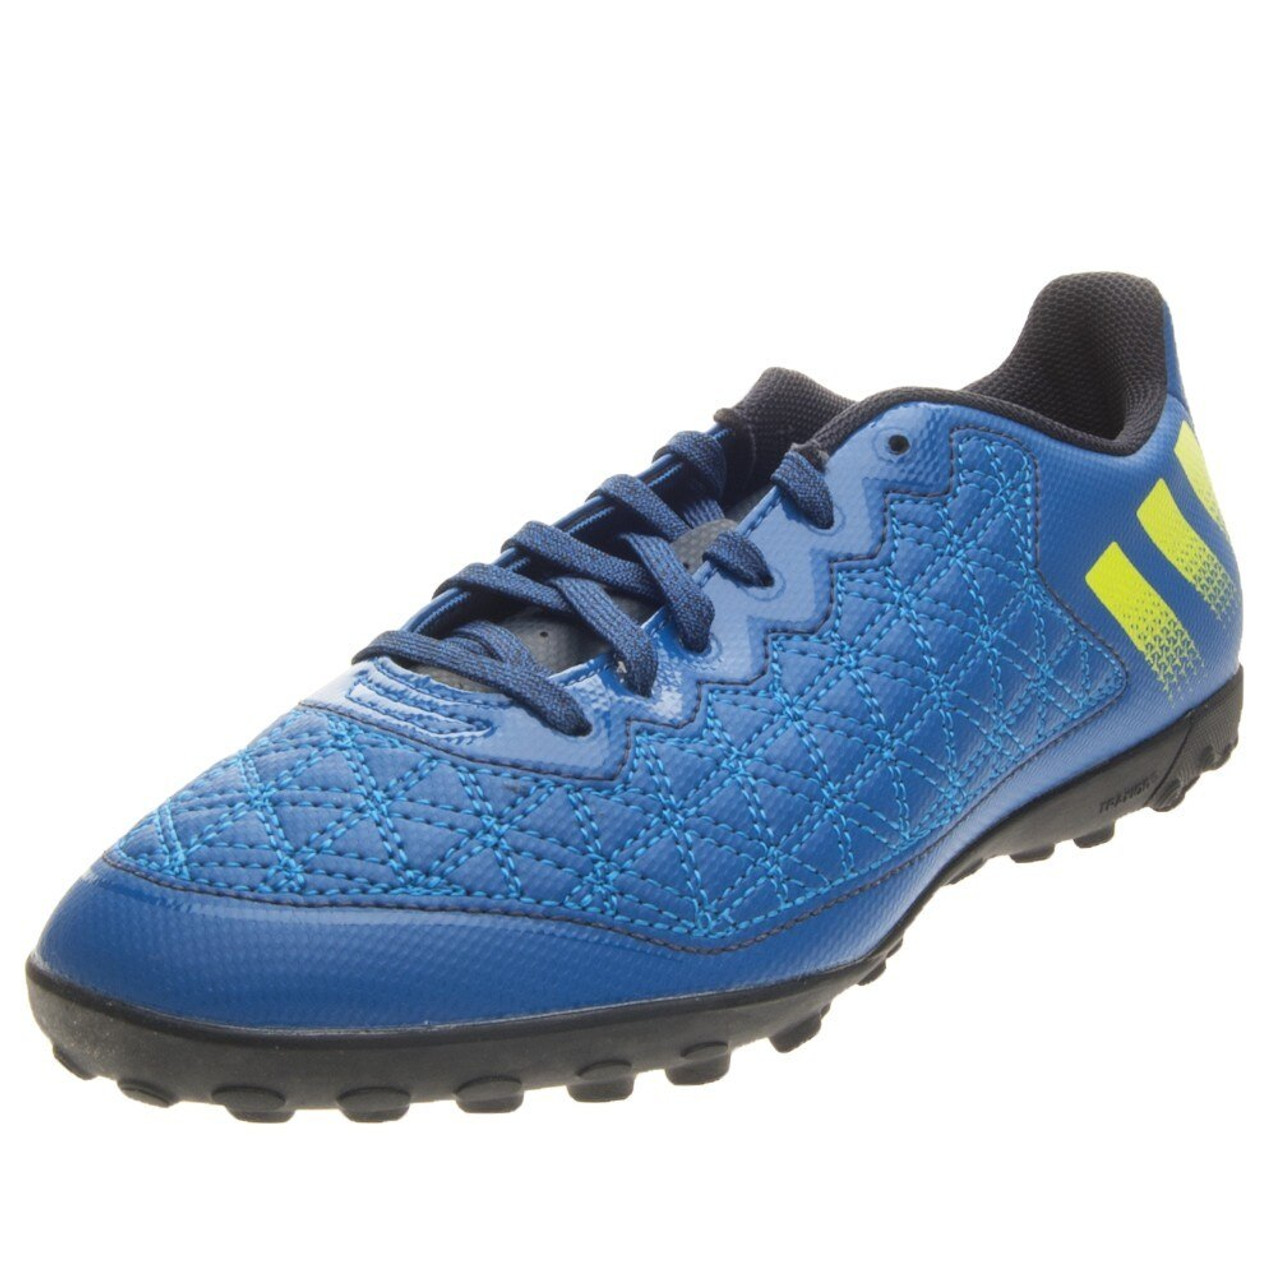 Adidas Ace 16.3 CG - Night Navy/Semi Solar Slime- SD (052220) - ohp soccer